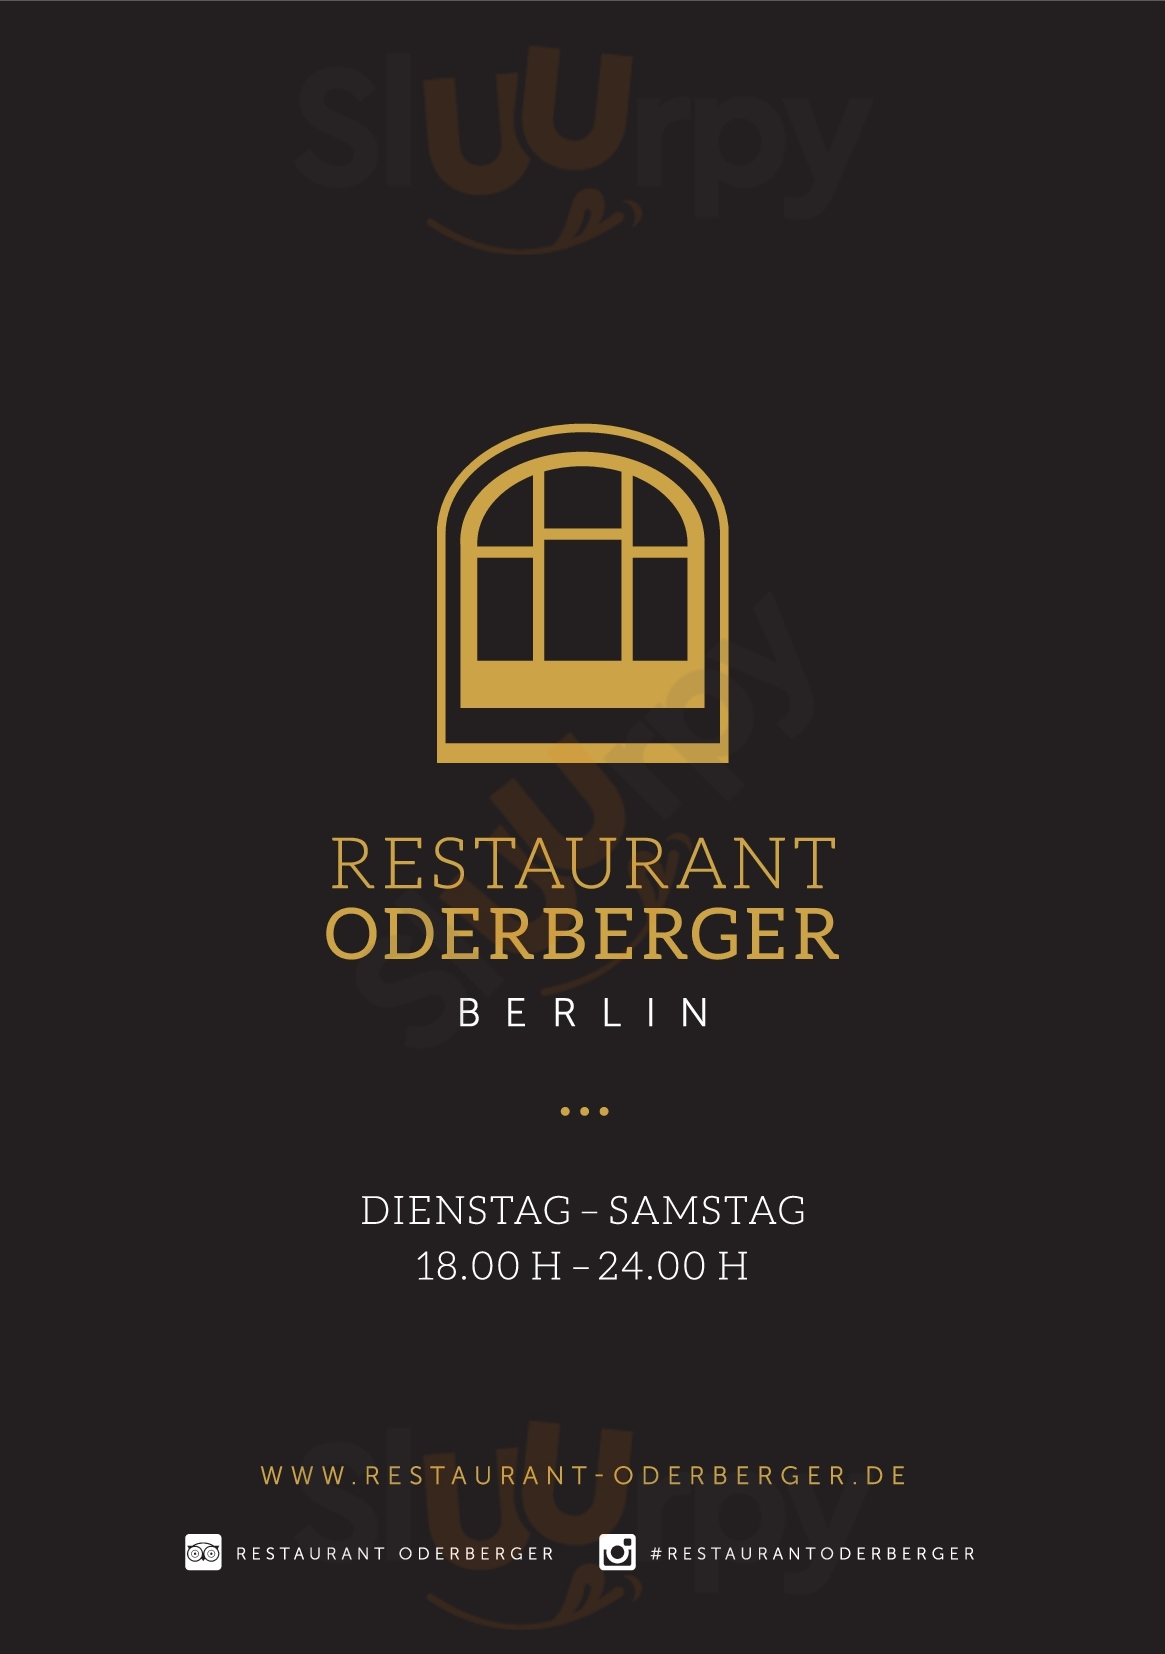 Oderberger Restaurant Berlin Menu - 1